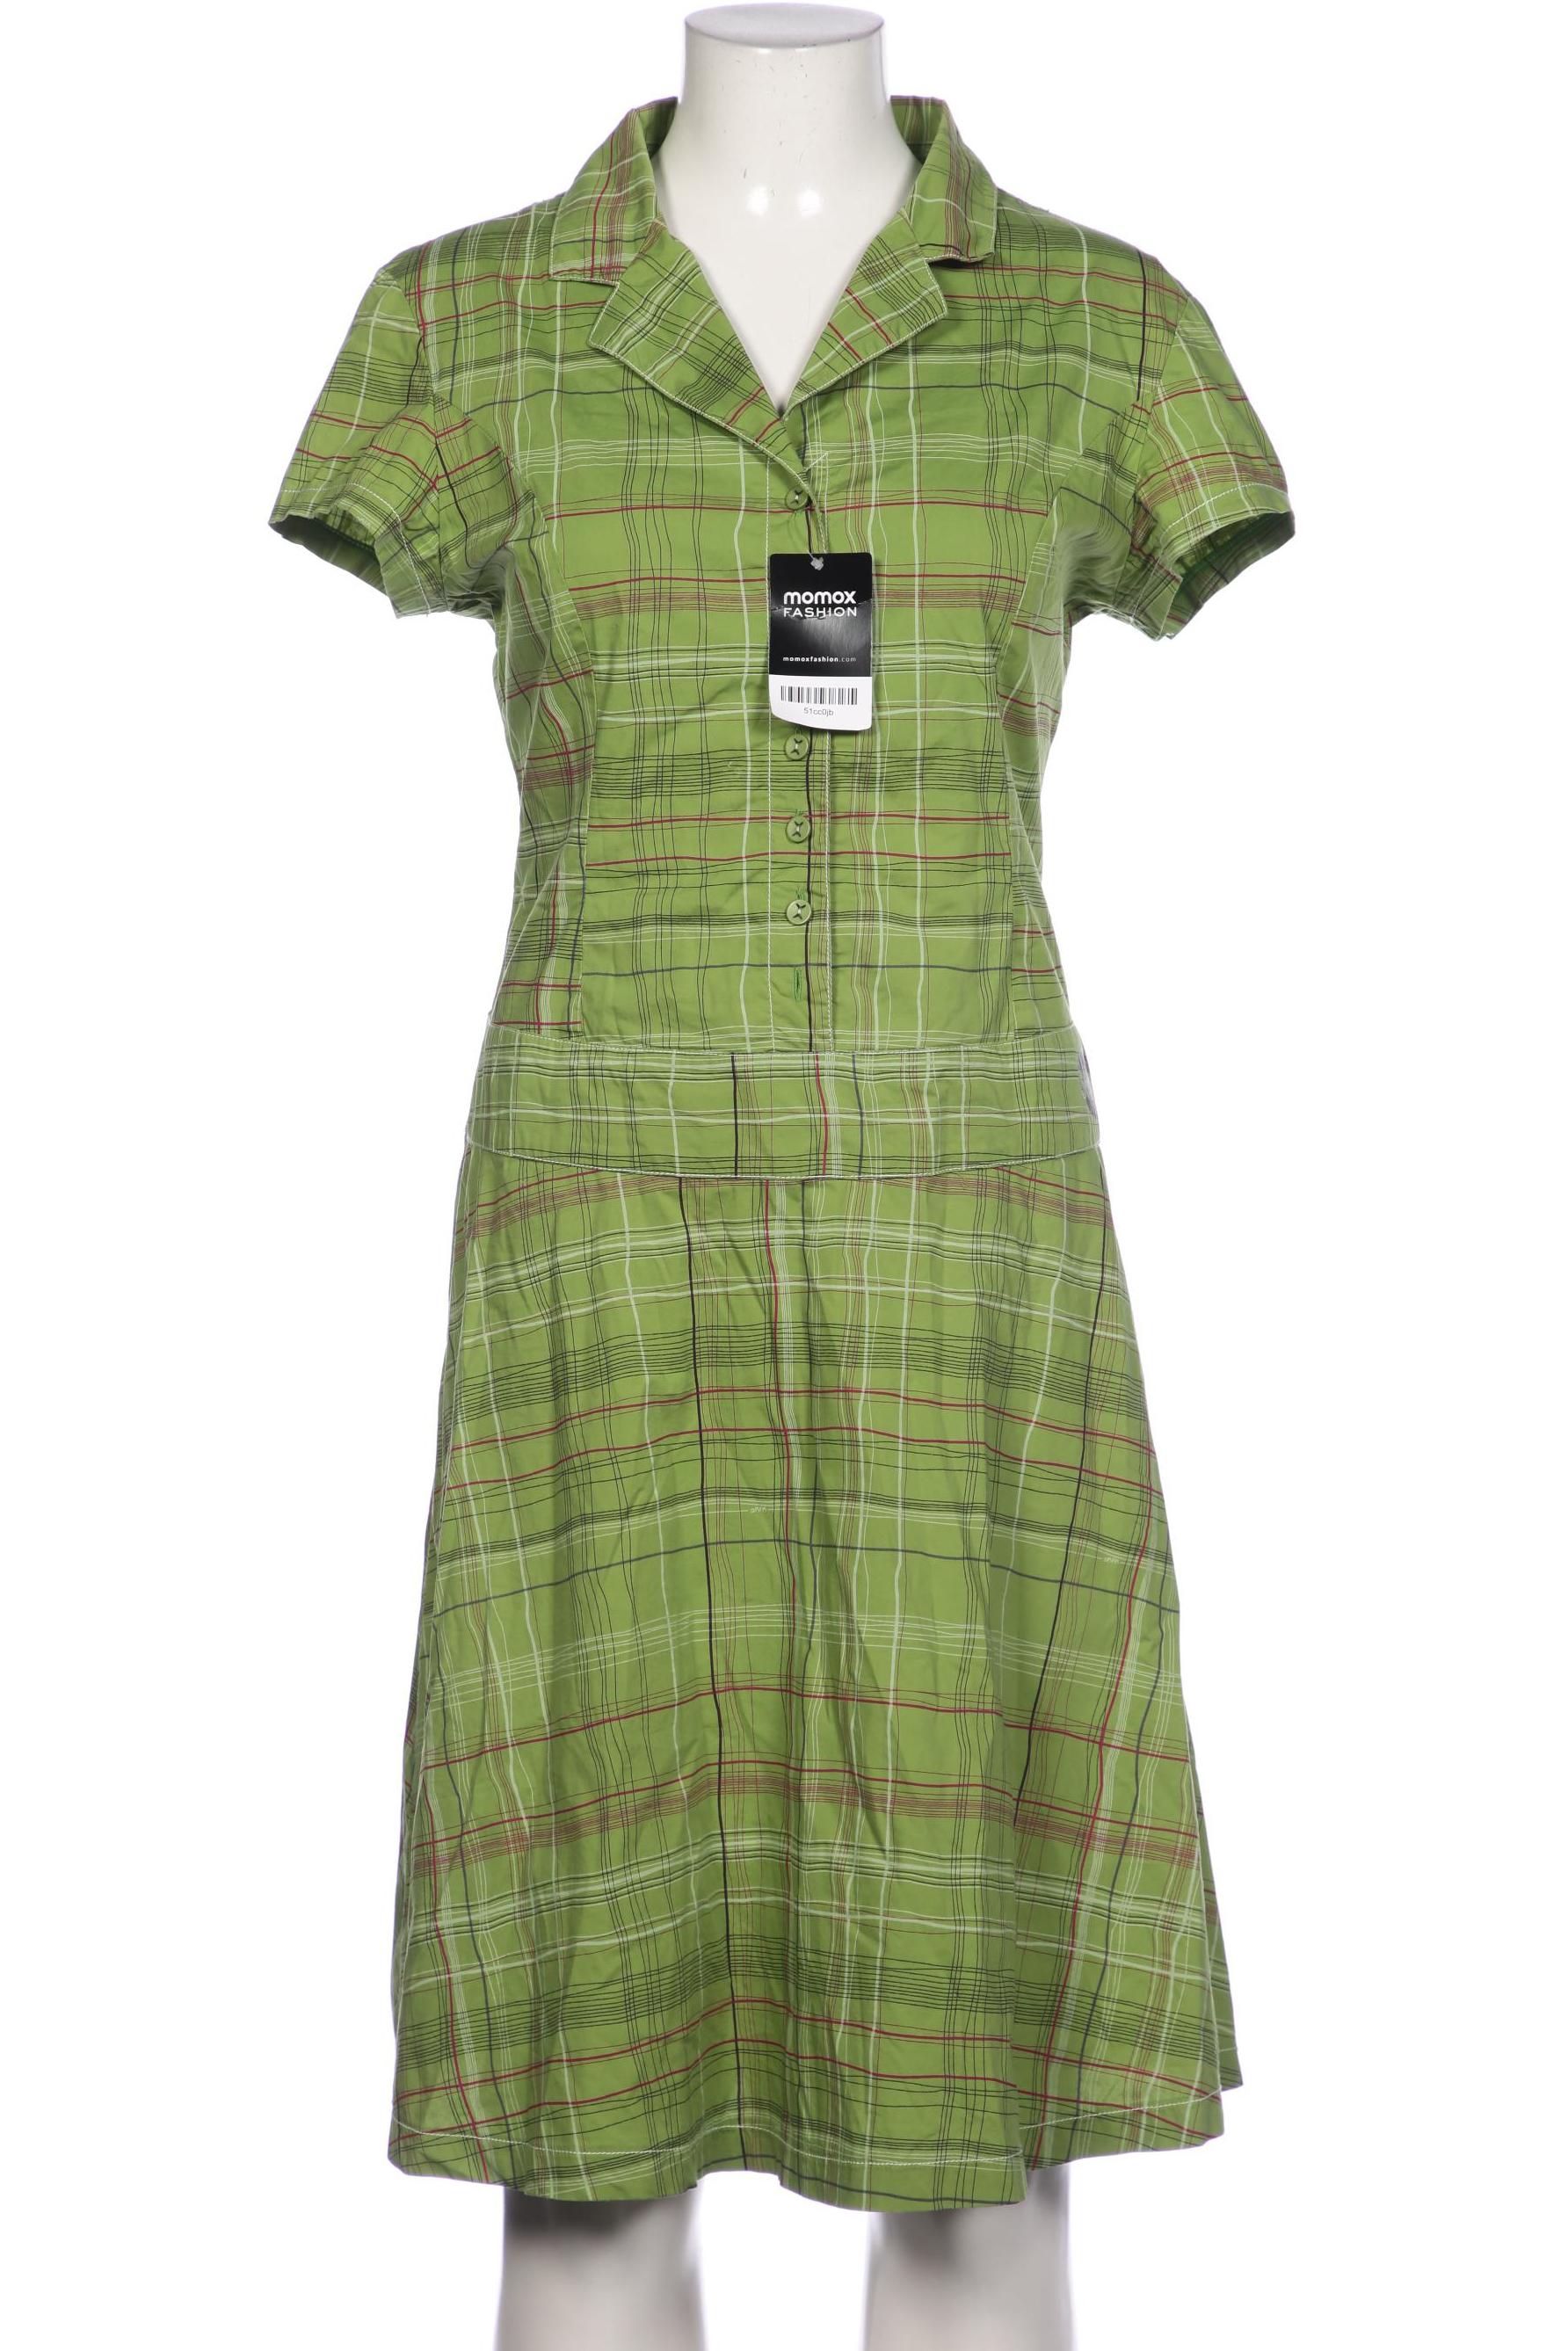 Skfk Damen Kleid, grün, Gr. 42 von SKFK